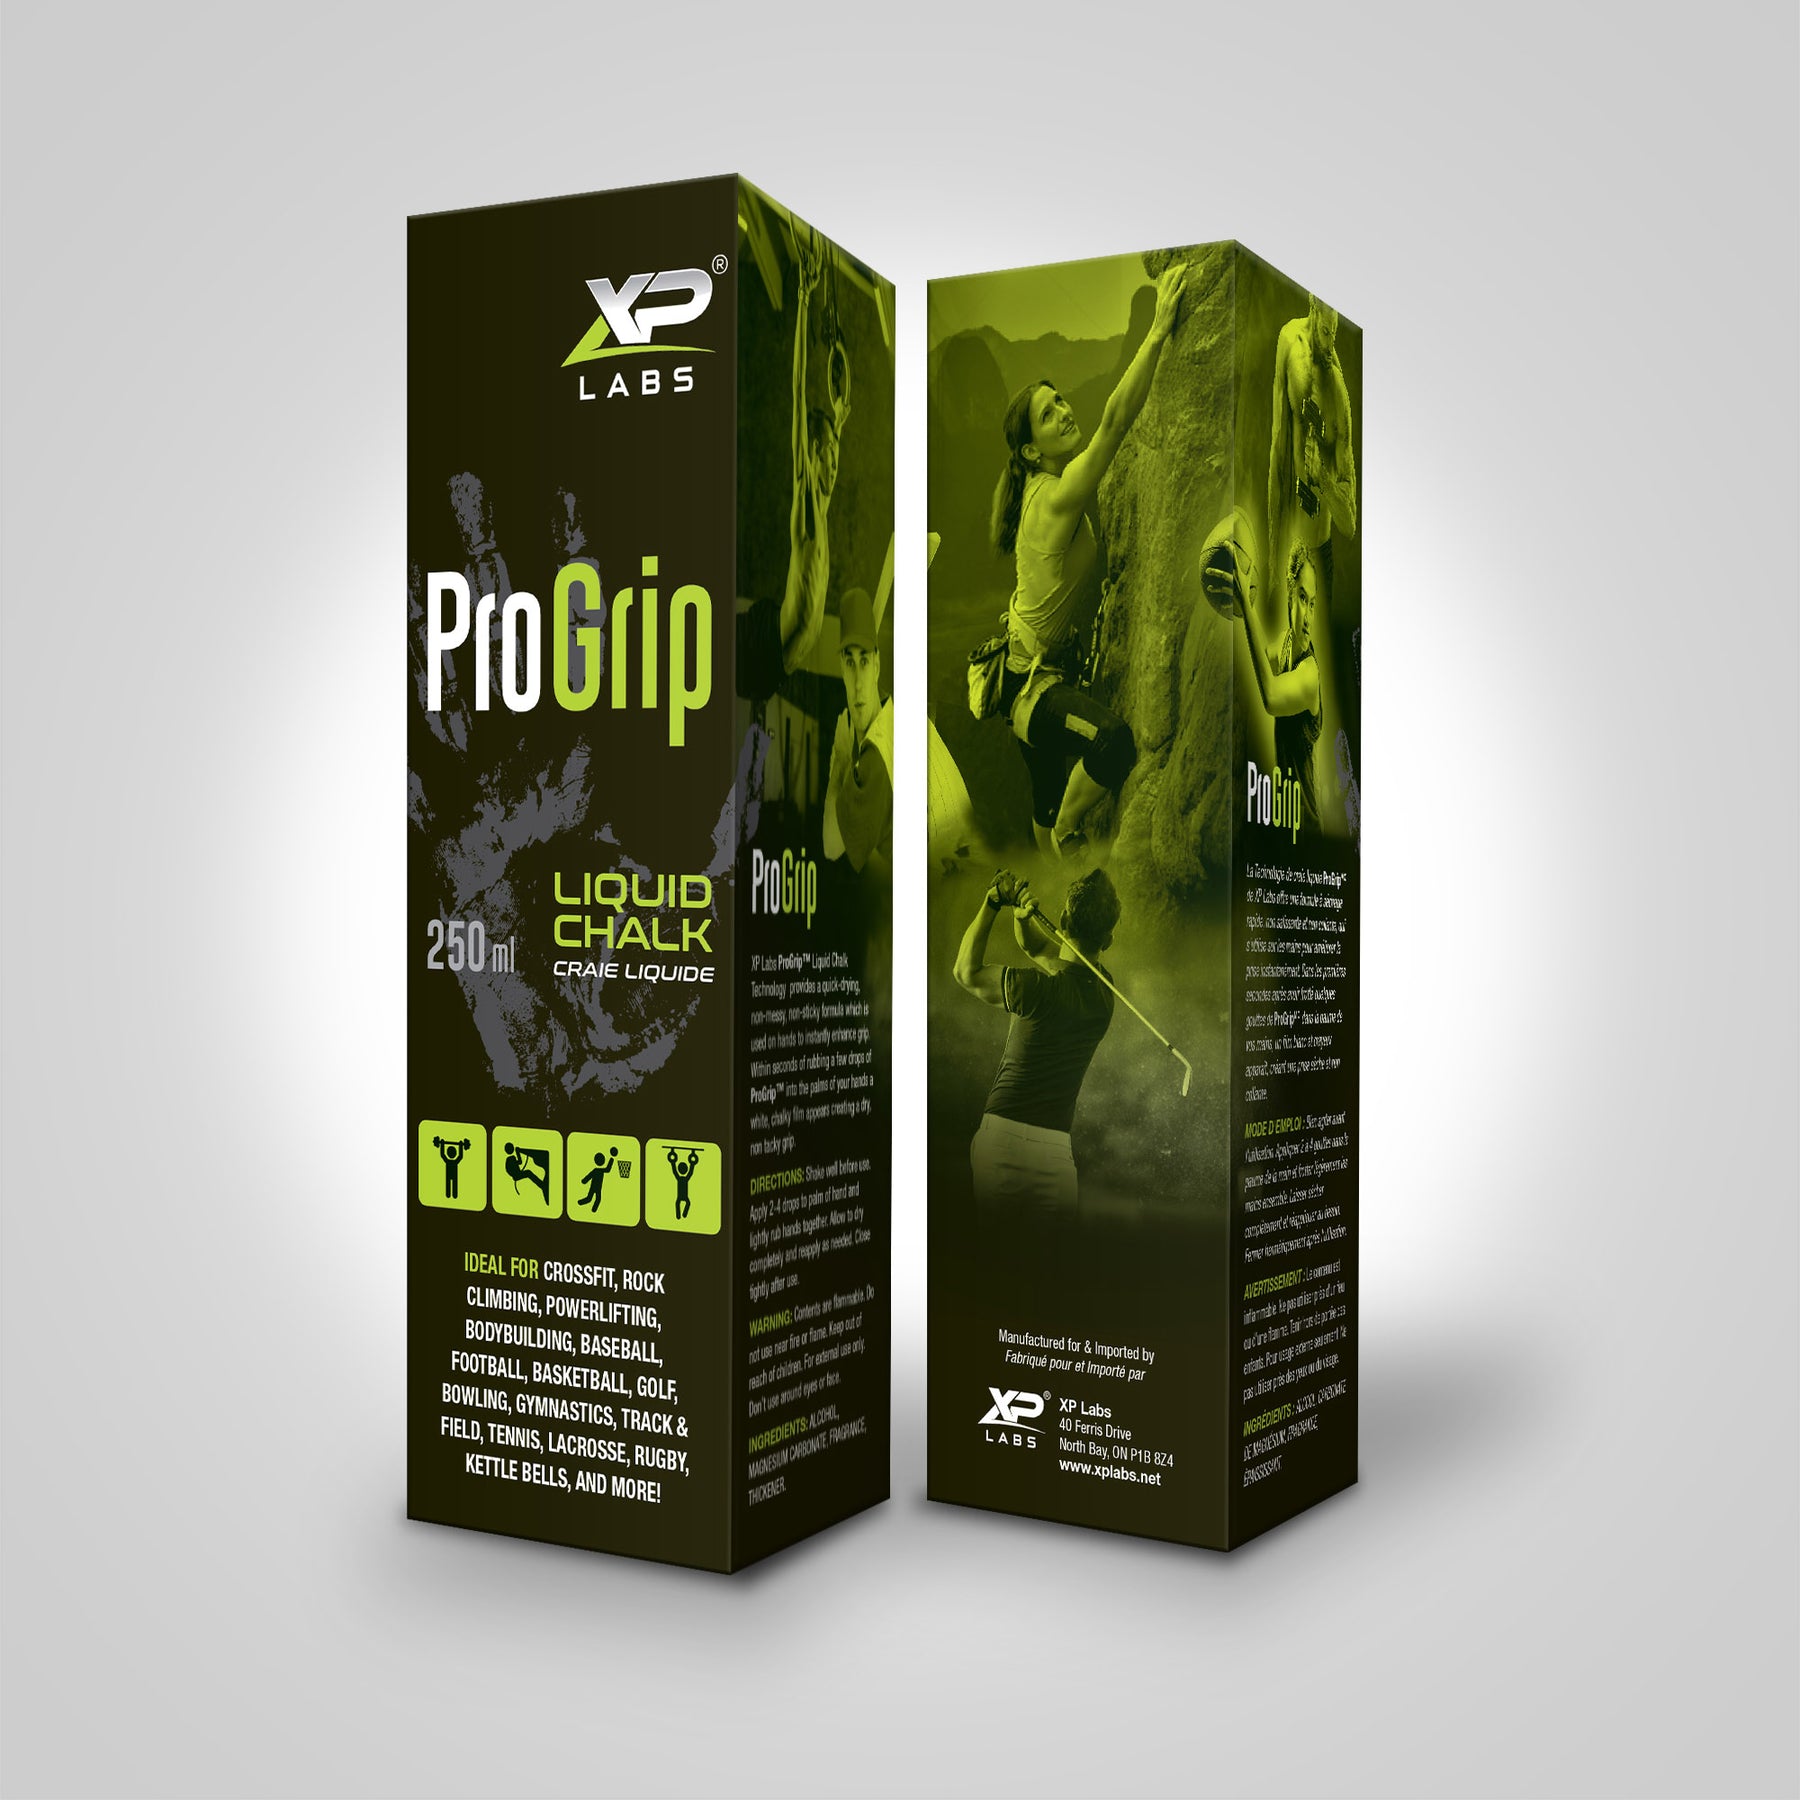 XP Labs - Pro Grip Liquid Chalk - 250ml